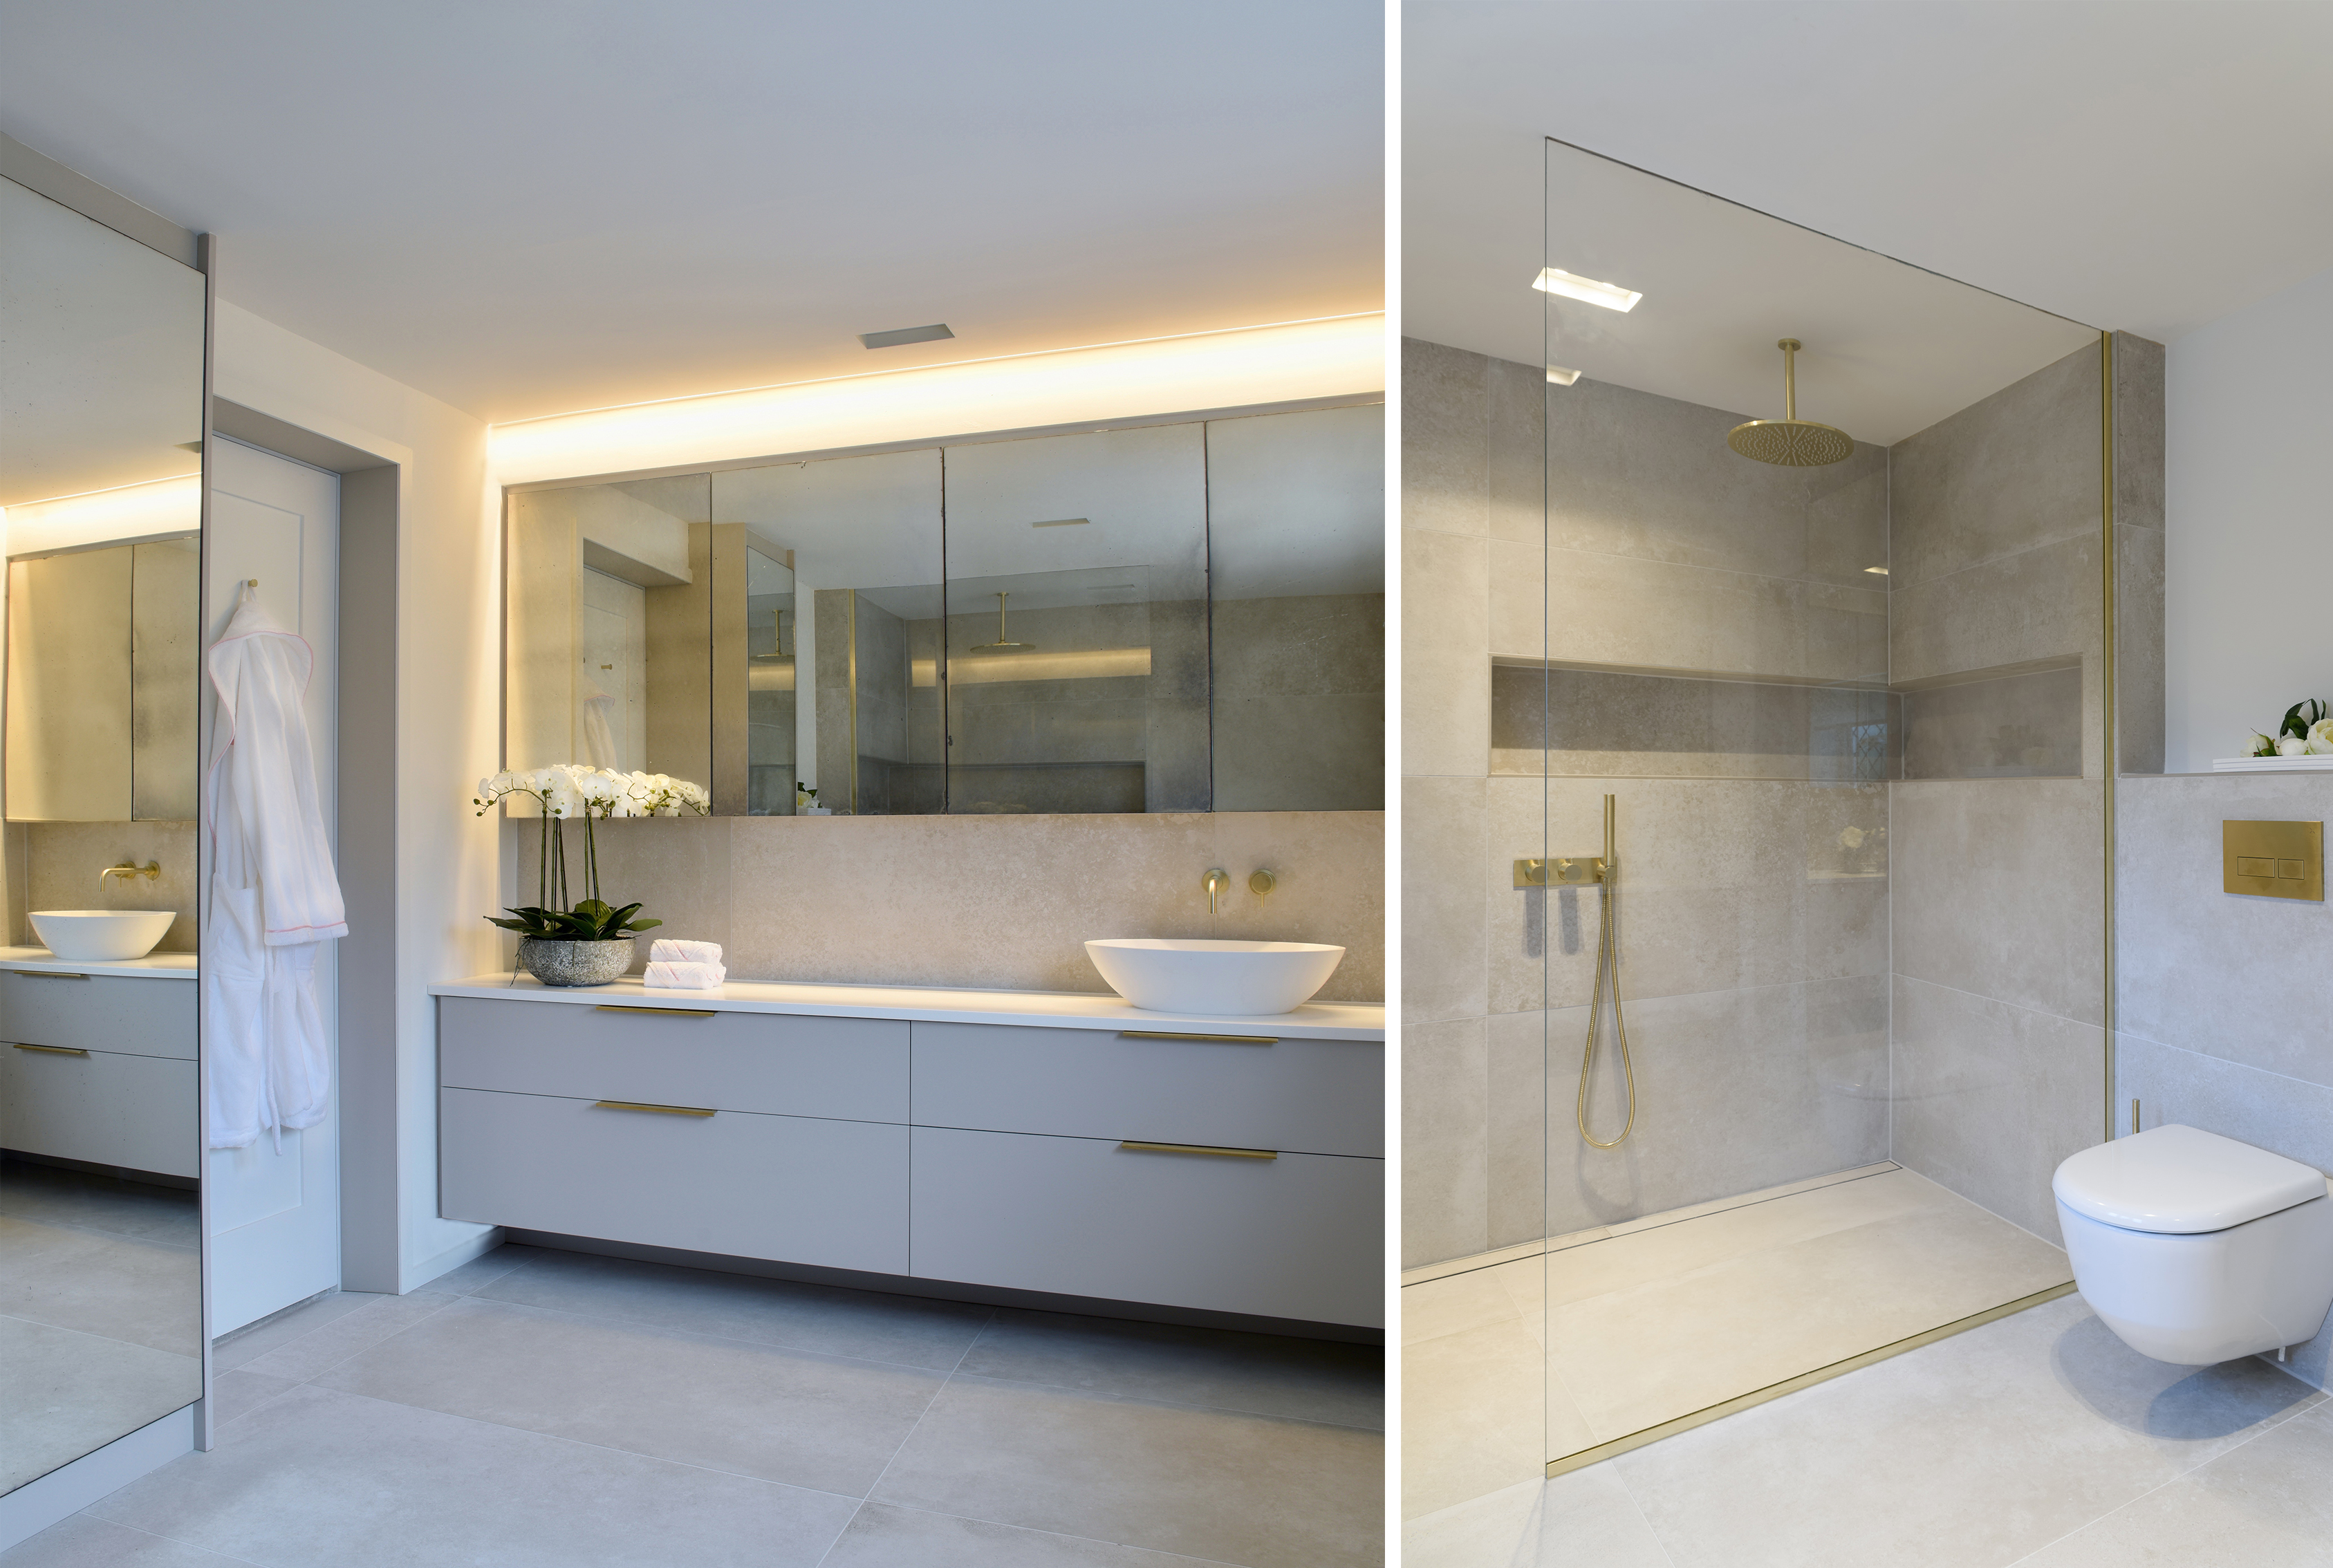 An elegant master suite with large bespoke vanity unit antique mirror storage shower niche